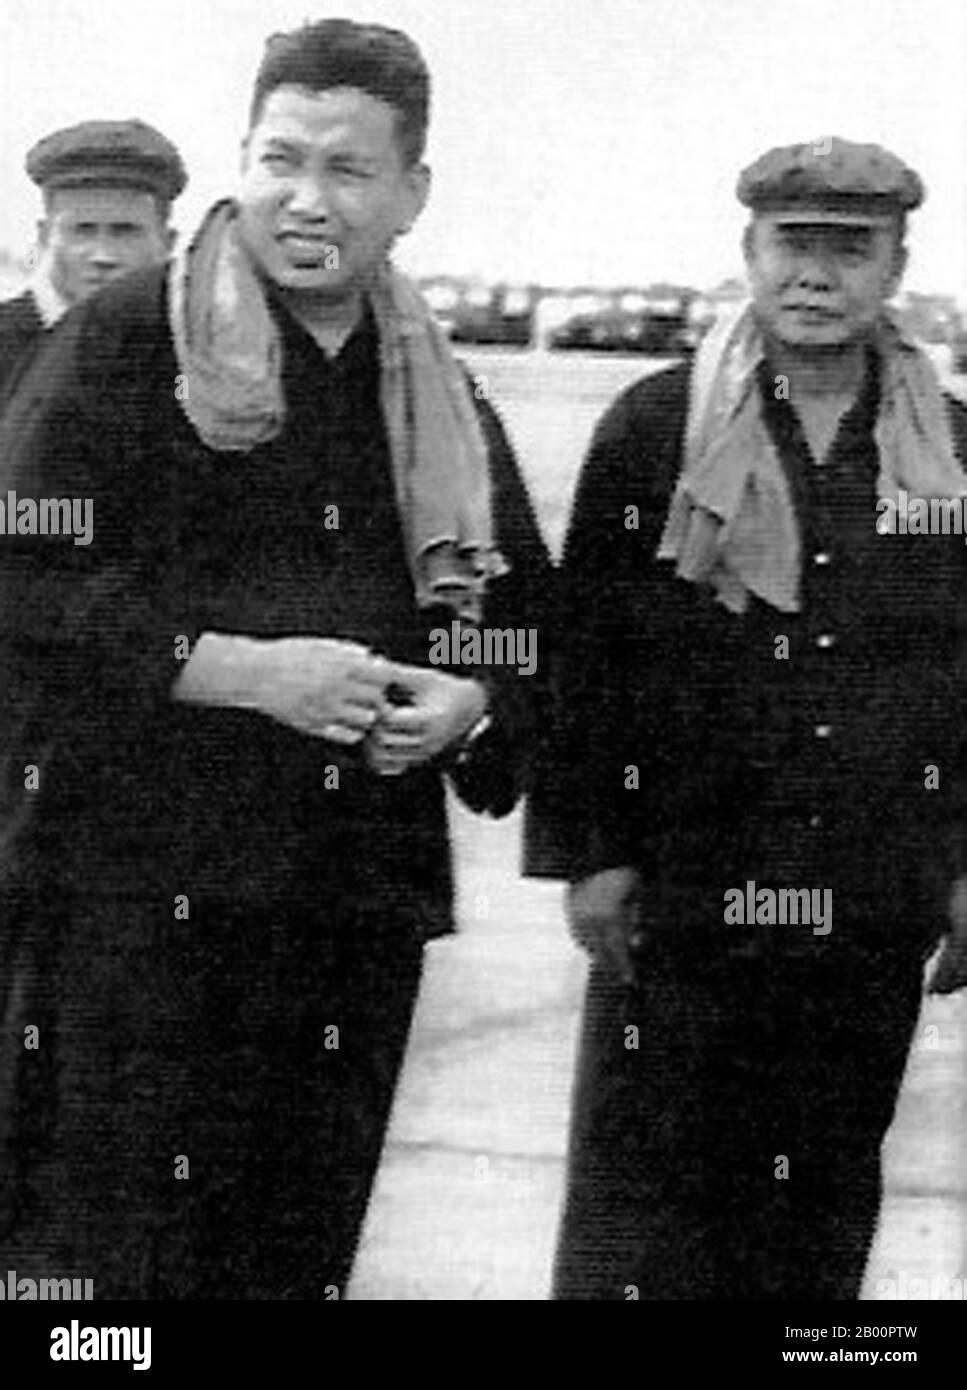 Cambodge: Le chef des Khmers rouges Pol Pot avec le commandant de la zone est des Khmers rouges SO Phim. Phim (1925 ? - 3 juin 1978) également appelé Sao Phim Pheum ou Sao, alias SO Vanna, était le commandant militaire des Khmers rouges de la partie orientale du Kampuchea démocratique. En 1978, après que les troupes de la région orientale ont été incapables de résister à une incursion des Vietnamiens, Phim a été accusé d'être un allié de Hanoi. Une purge massive conduite par Ke Pauk a été ordonnée dans la zone est. Encerclé par les forces de Pol Pot, le 3 juin 1978, Phim s'est suicidé. Sa femme et ses enfants ont été capturés et ont tous été tués. Banque D'Images